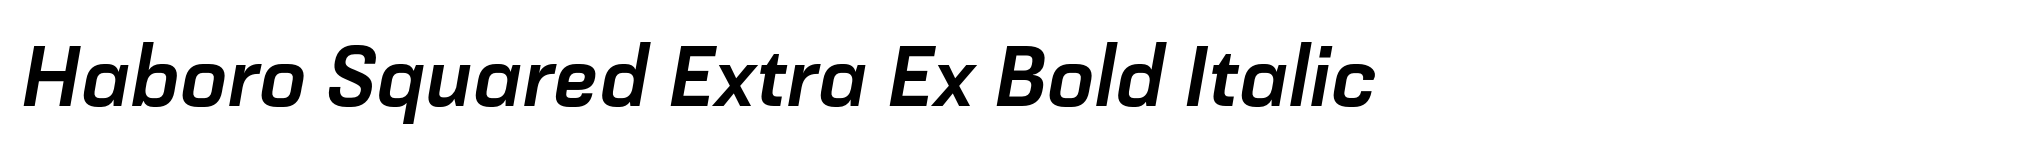 Haboro Squared Extra Ex Bold Italic image